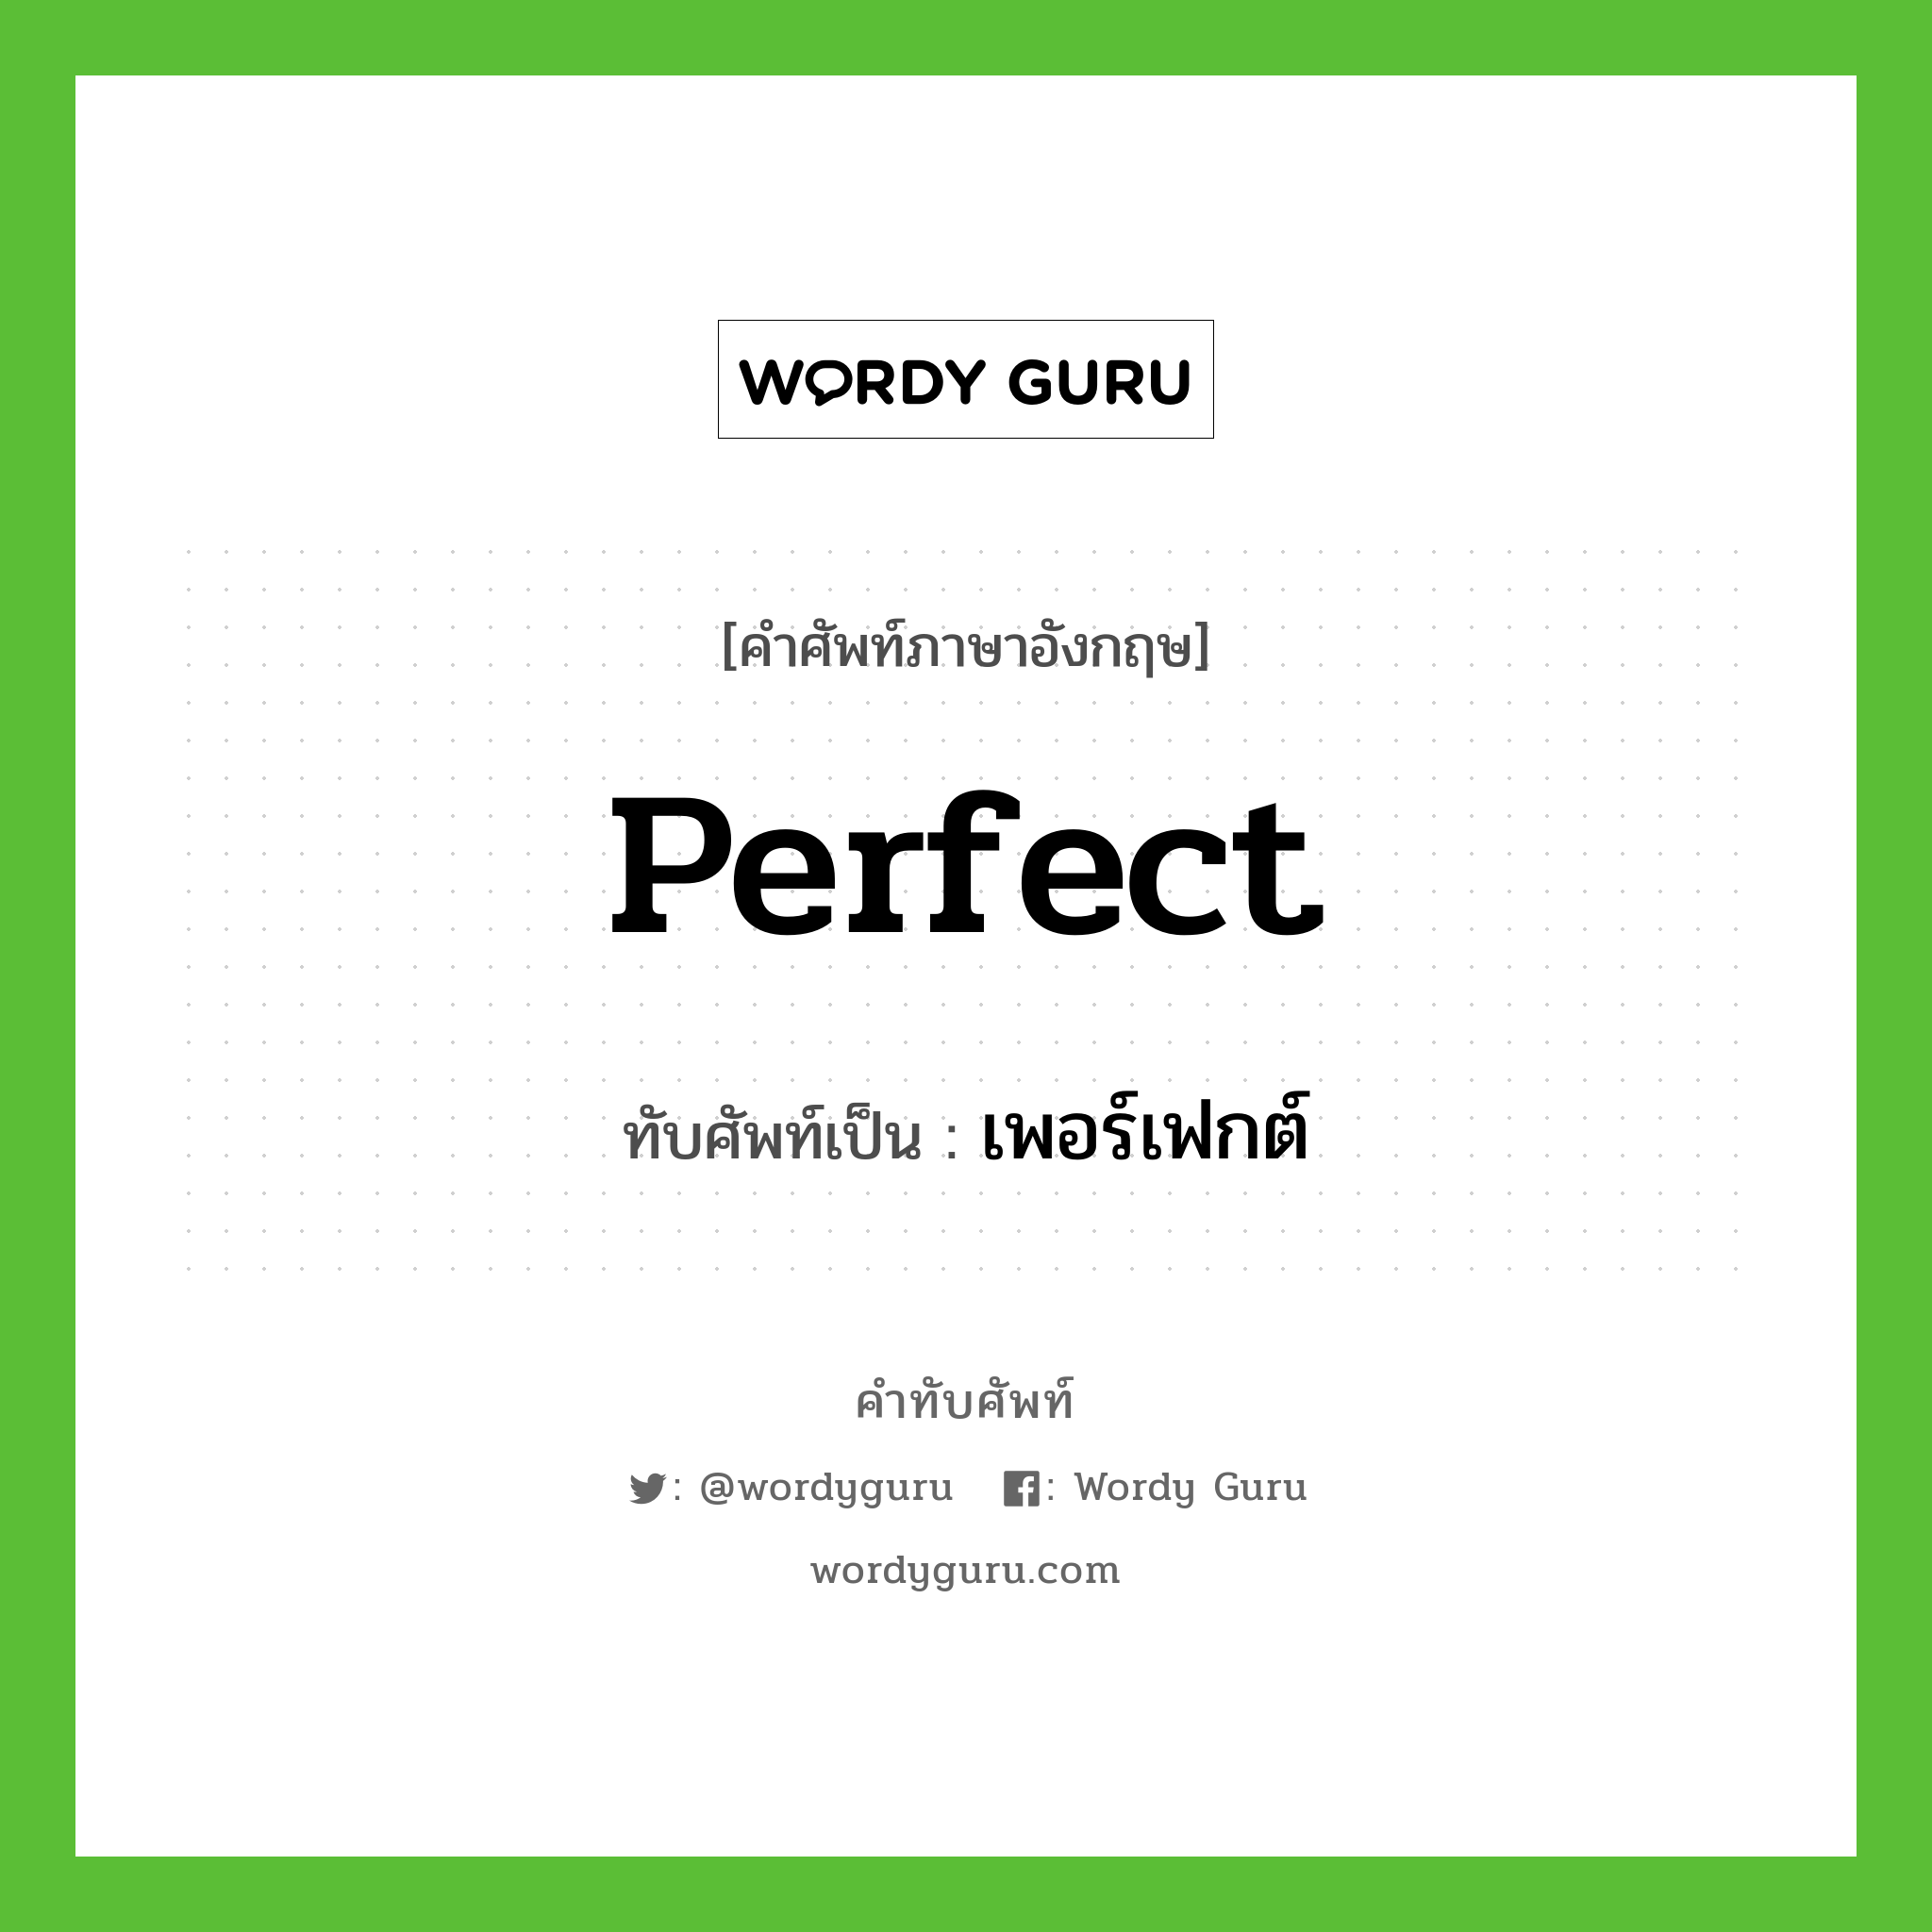 perfect เขียนเป็นคำไทยว่าอะไร?, คำศัพท์ภาษาอังกฤษ perfect ทับศัพท์เป็น เพอร์เฟกต์